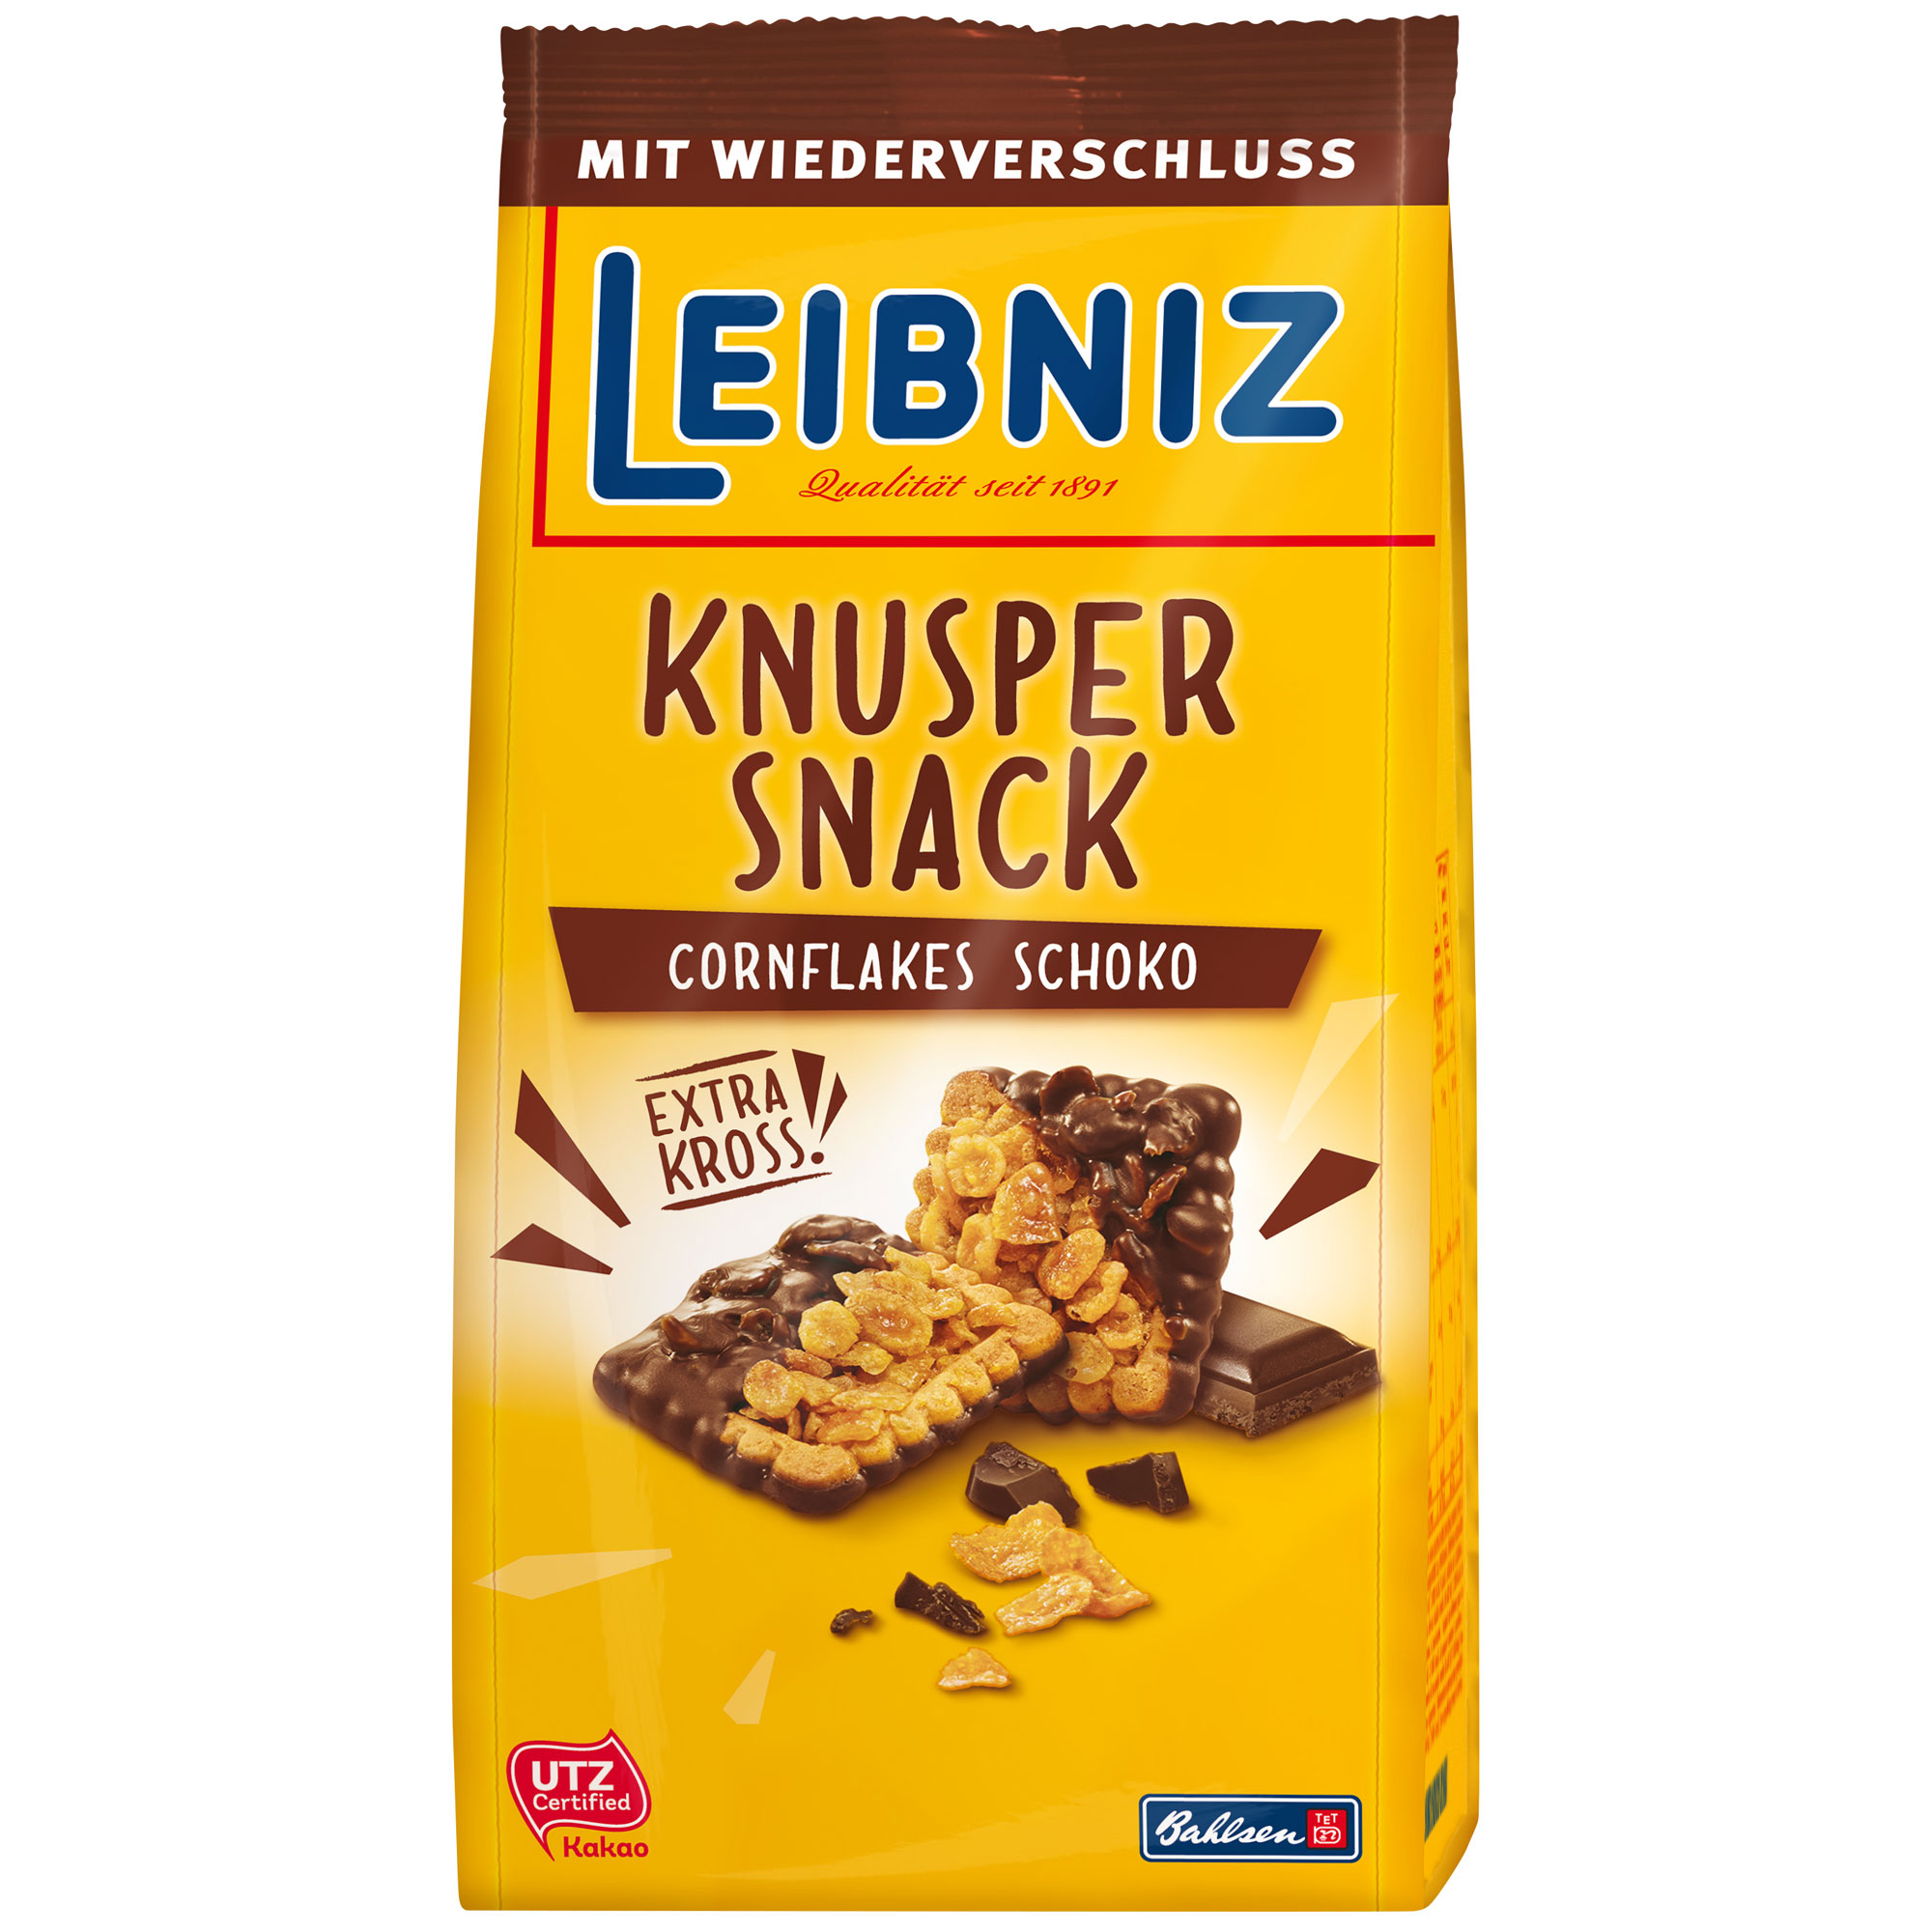 Leibniz Knusper Snack Cornflakes Schoko 150g | Online kaufen im World ...